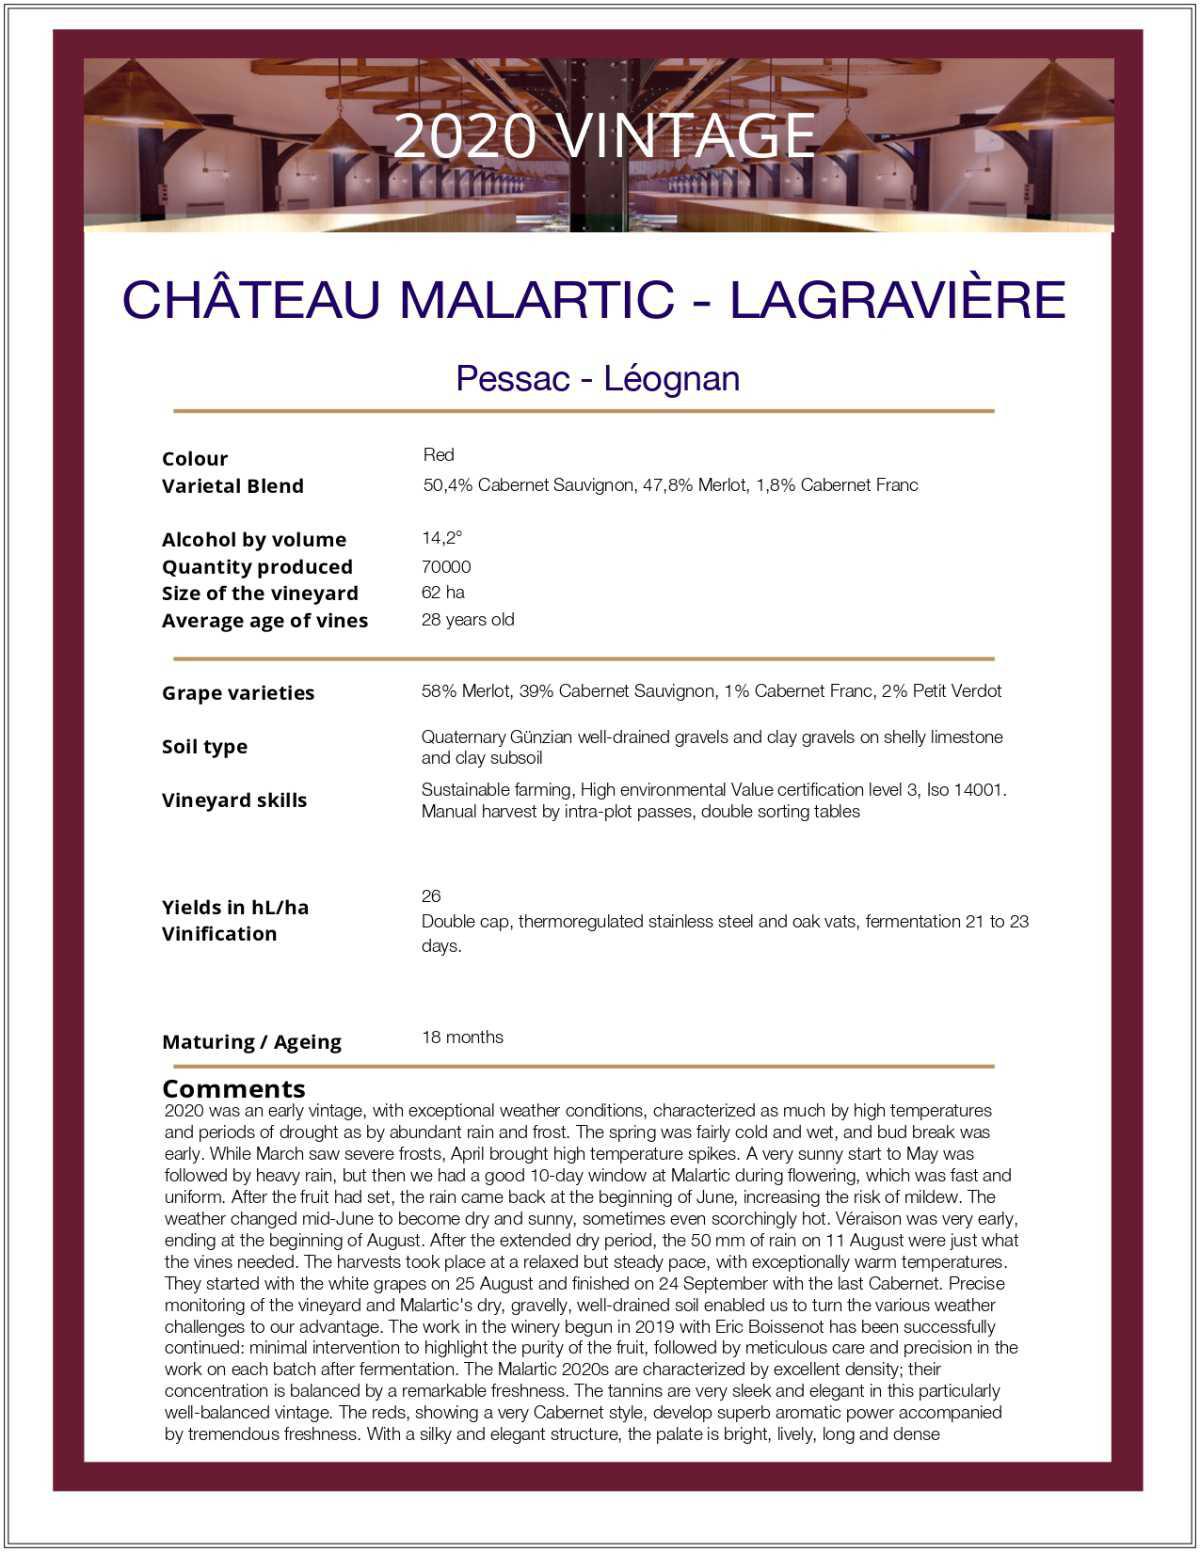 Château Malartic - Lagravière - Red